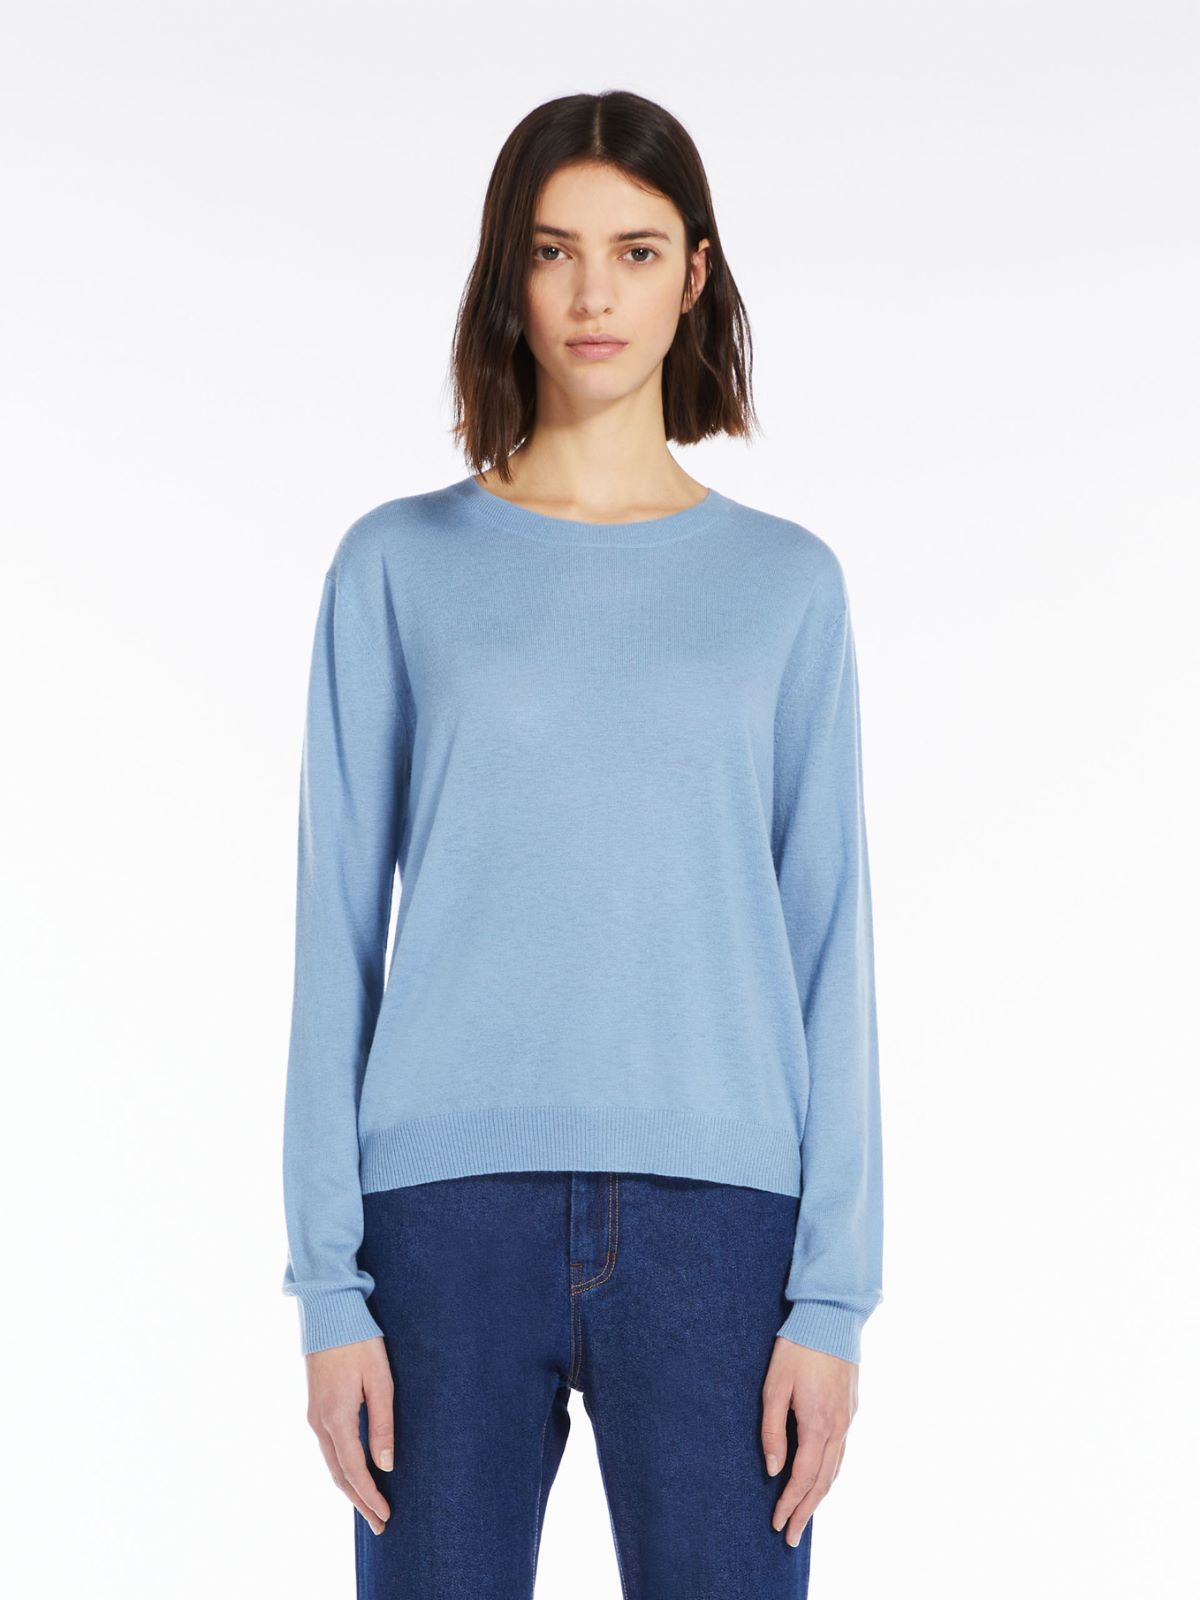 Cashmere-blend sweater - LIGHT BLUE - Weekend Max Mara - 2